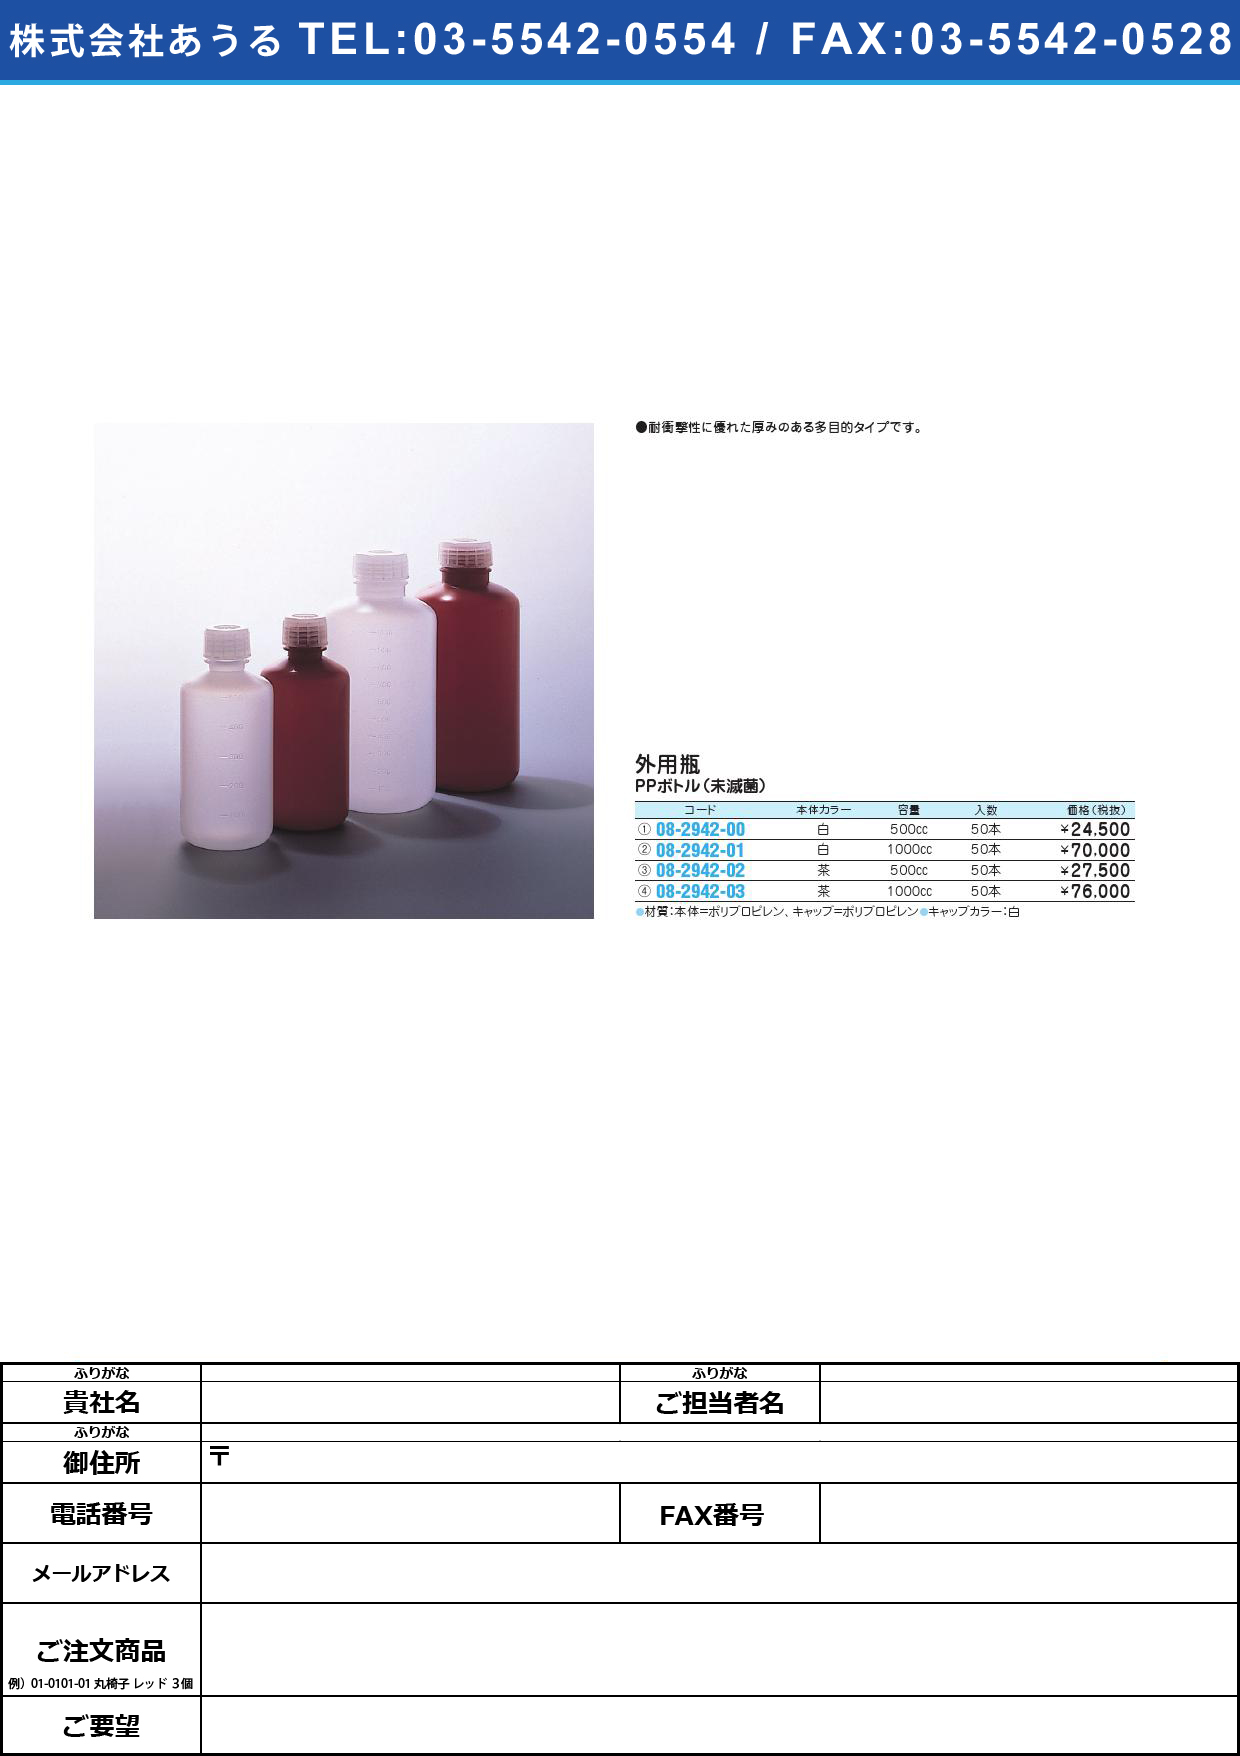 投薬瓶ＰＰボトル茶（未滅菌） 1000CC(50ﾎﾟﾝｲﾘ)PPﾎﾞﾄﾙﾁｬ(ﾐﾒｯｷﾝ)(08-2942-03)【1梱単位】